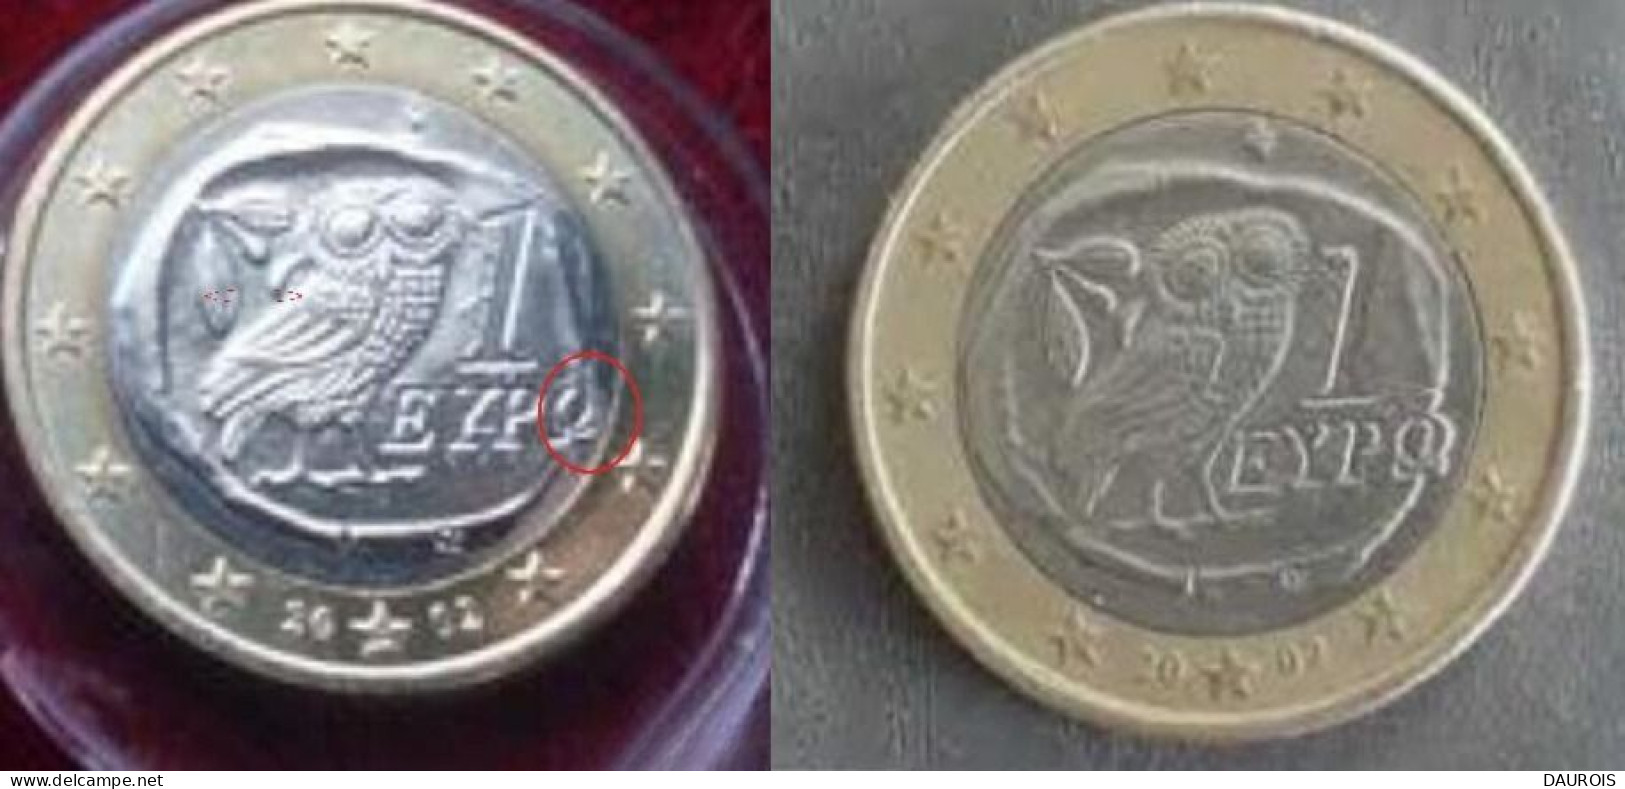 Rare ! Ces 2 1 € Grèce 2002 une frappée d'un S-l'AUTRE MOINS DE GRAINS(CARTE)